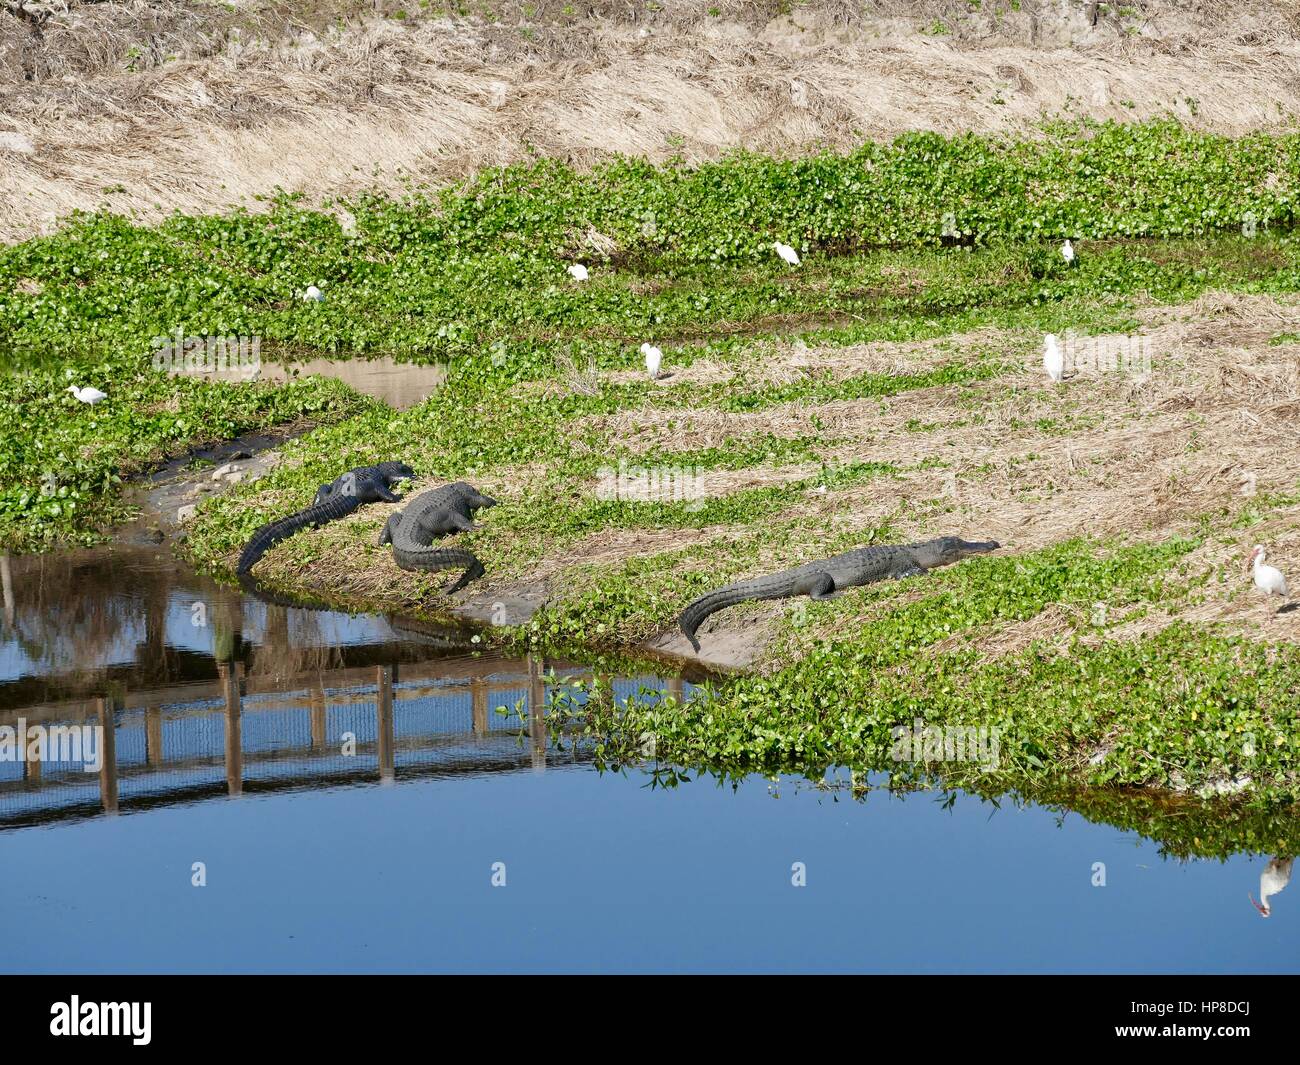 Trois Alligators pèlerin avec promenade, parc d'état de Paynes Prairie Preserve, Gainesville, Floride, USA Banque D'Images